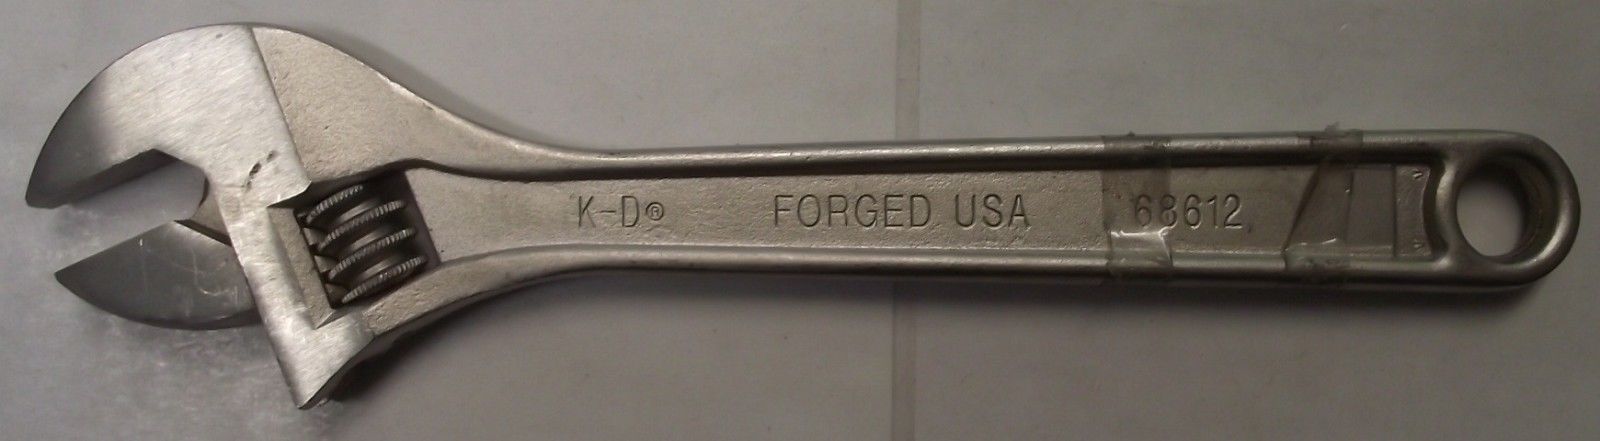 KD Tools 68612 12" Adjustable Wrench USA